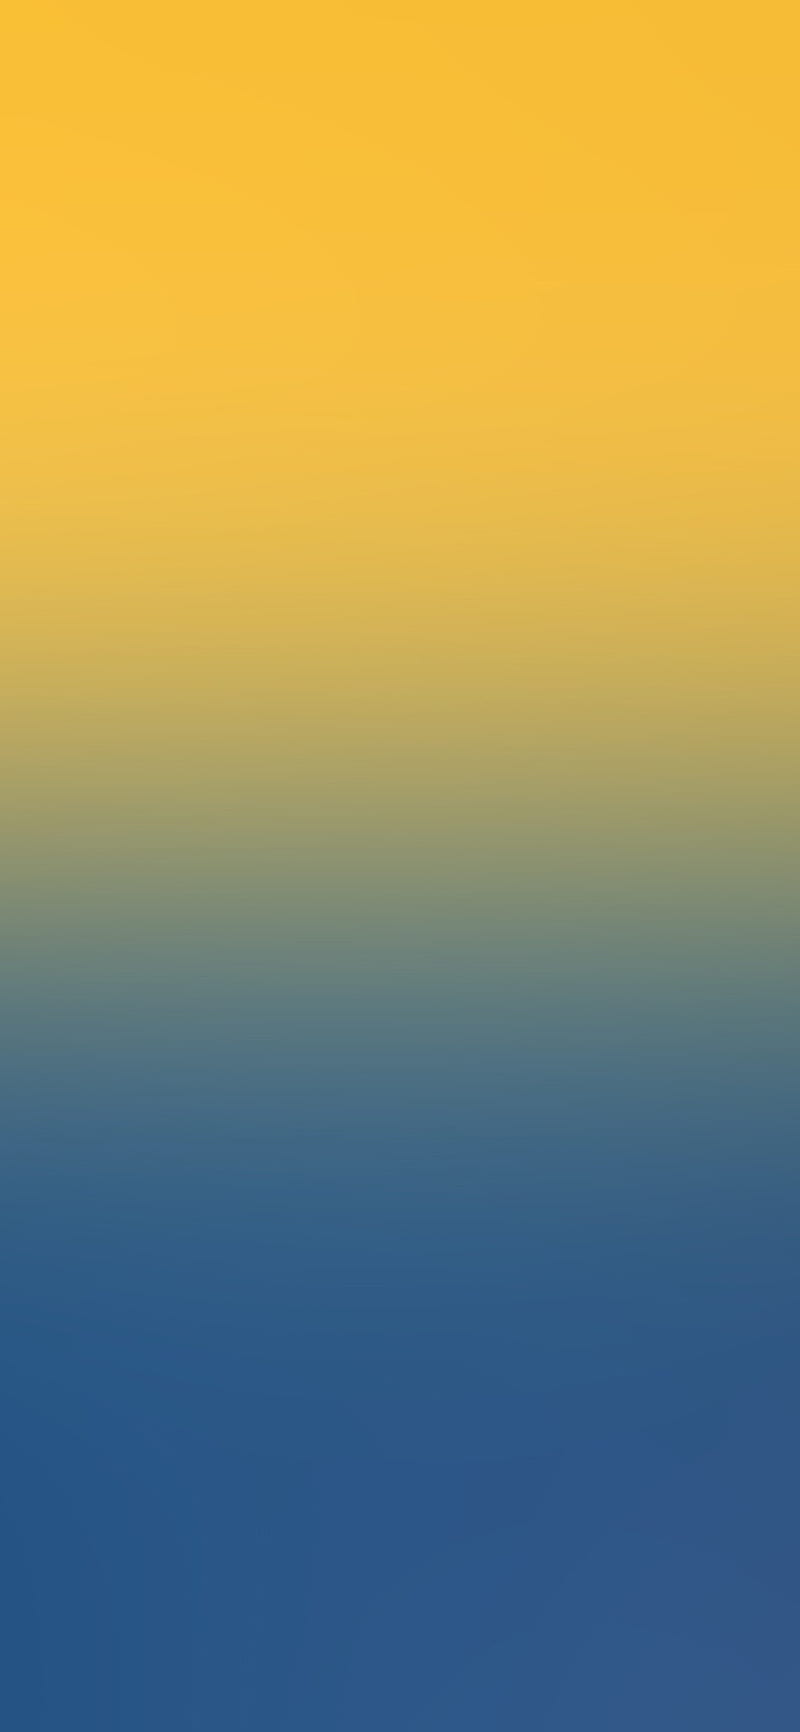 HD yellow gradient wallpapers | Peakpx